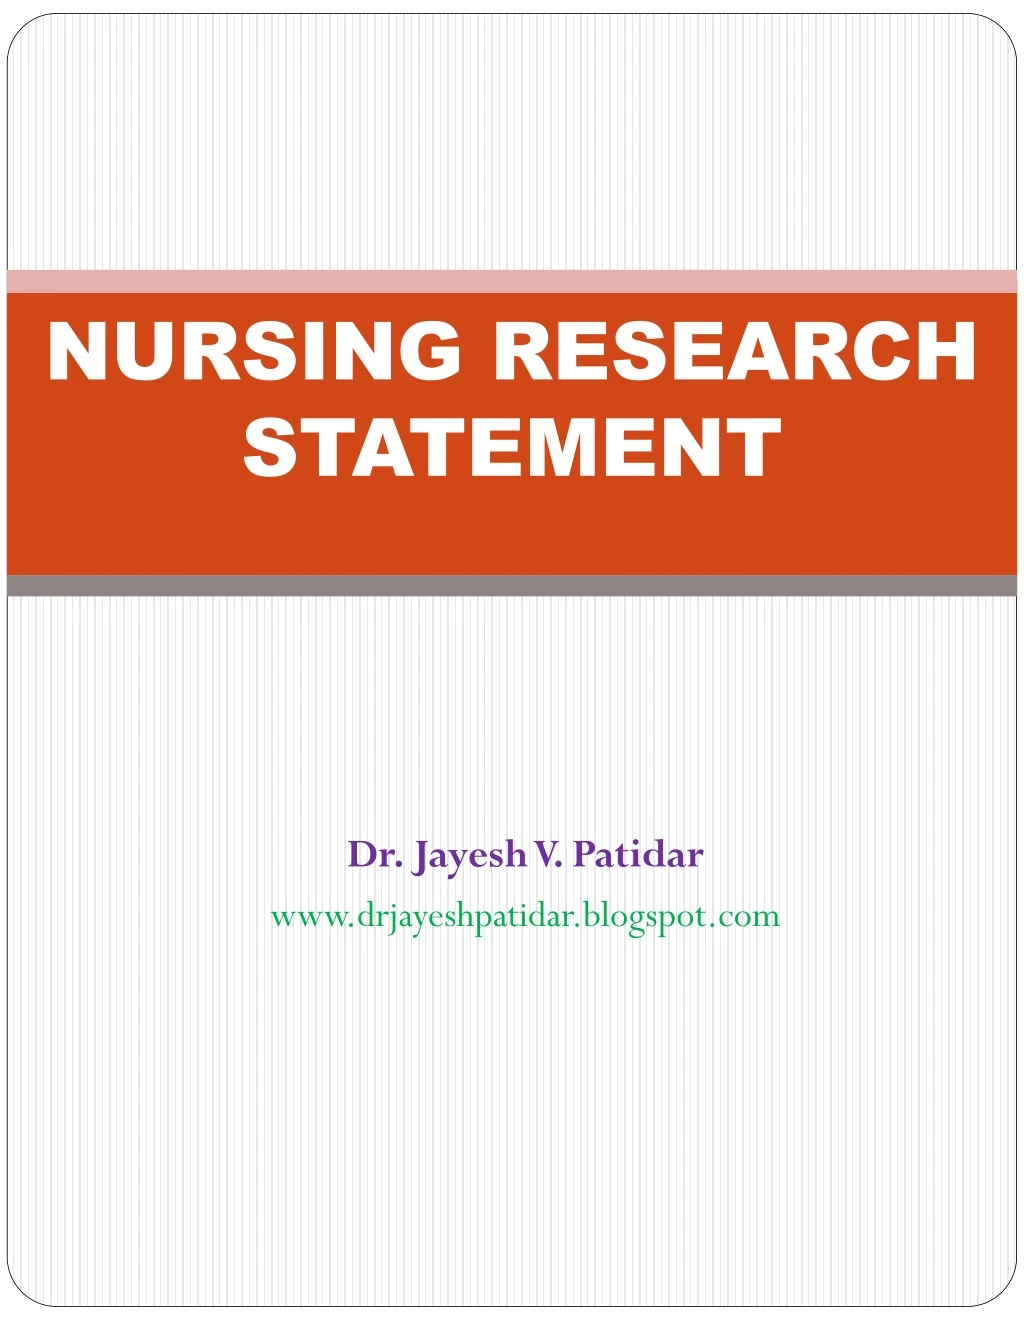 research problem statement in child health nursing